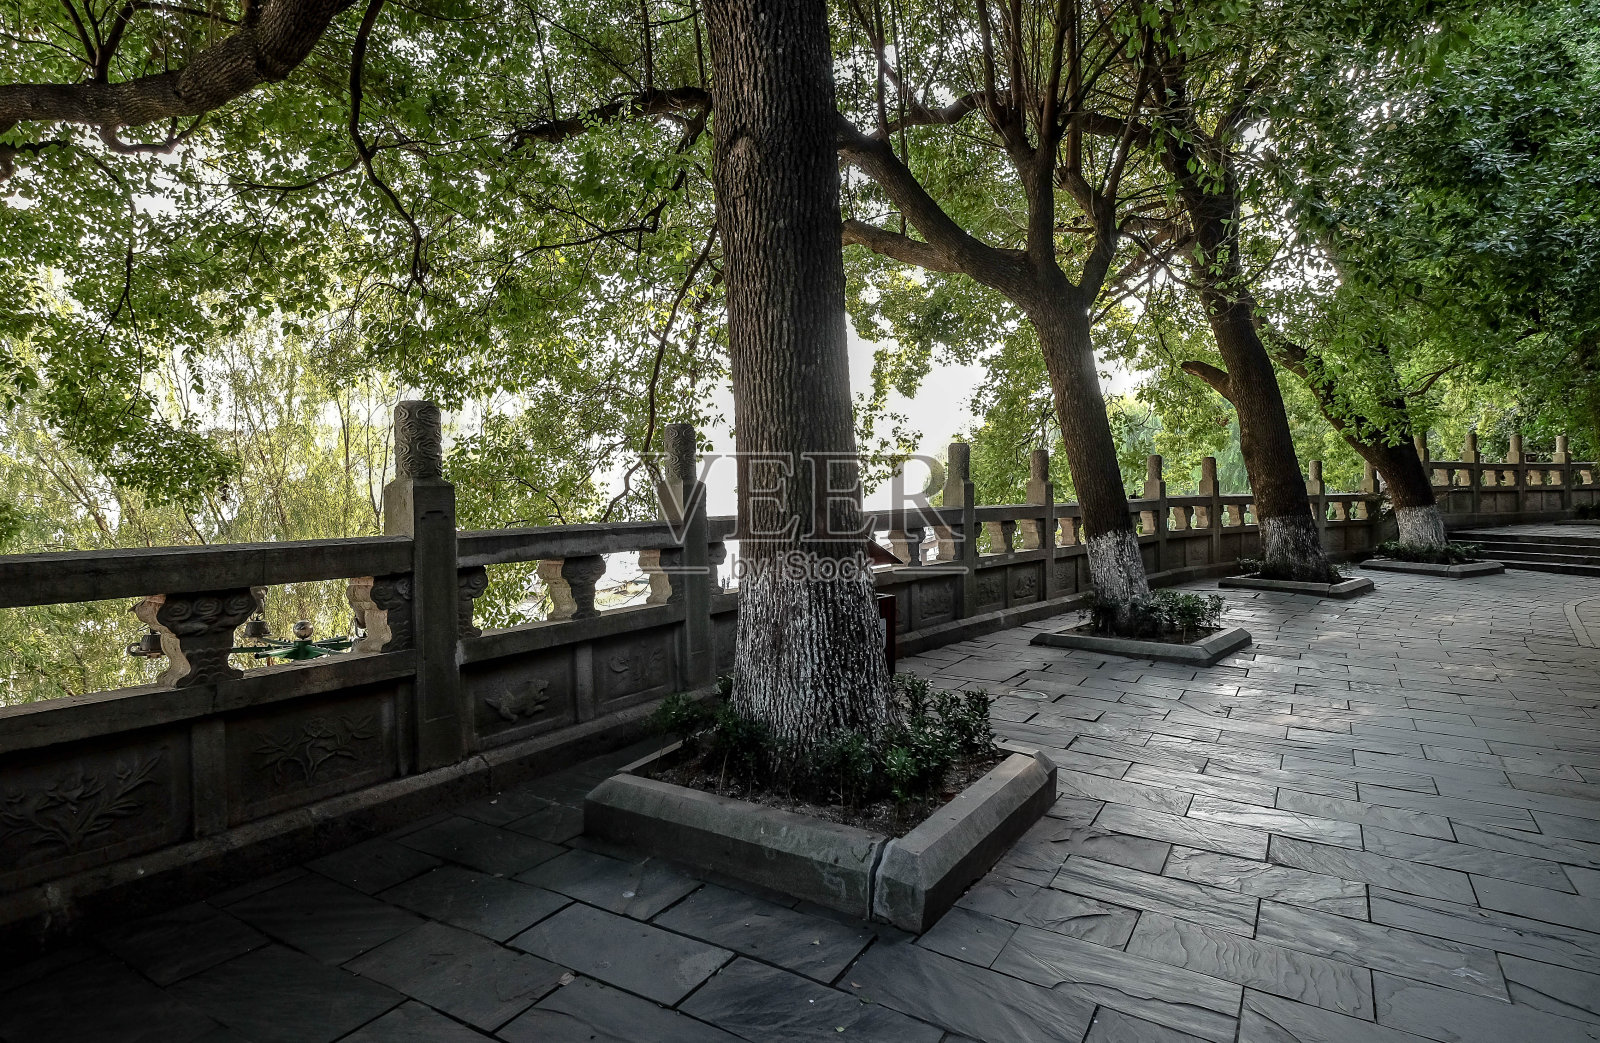 中国湖北省武汉到古宫来赏诗的游客。照片摄影图片